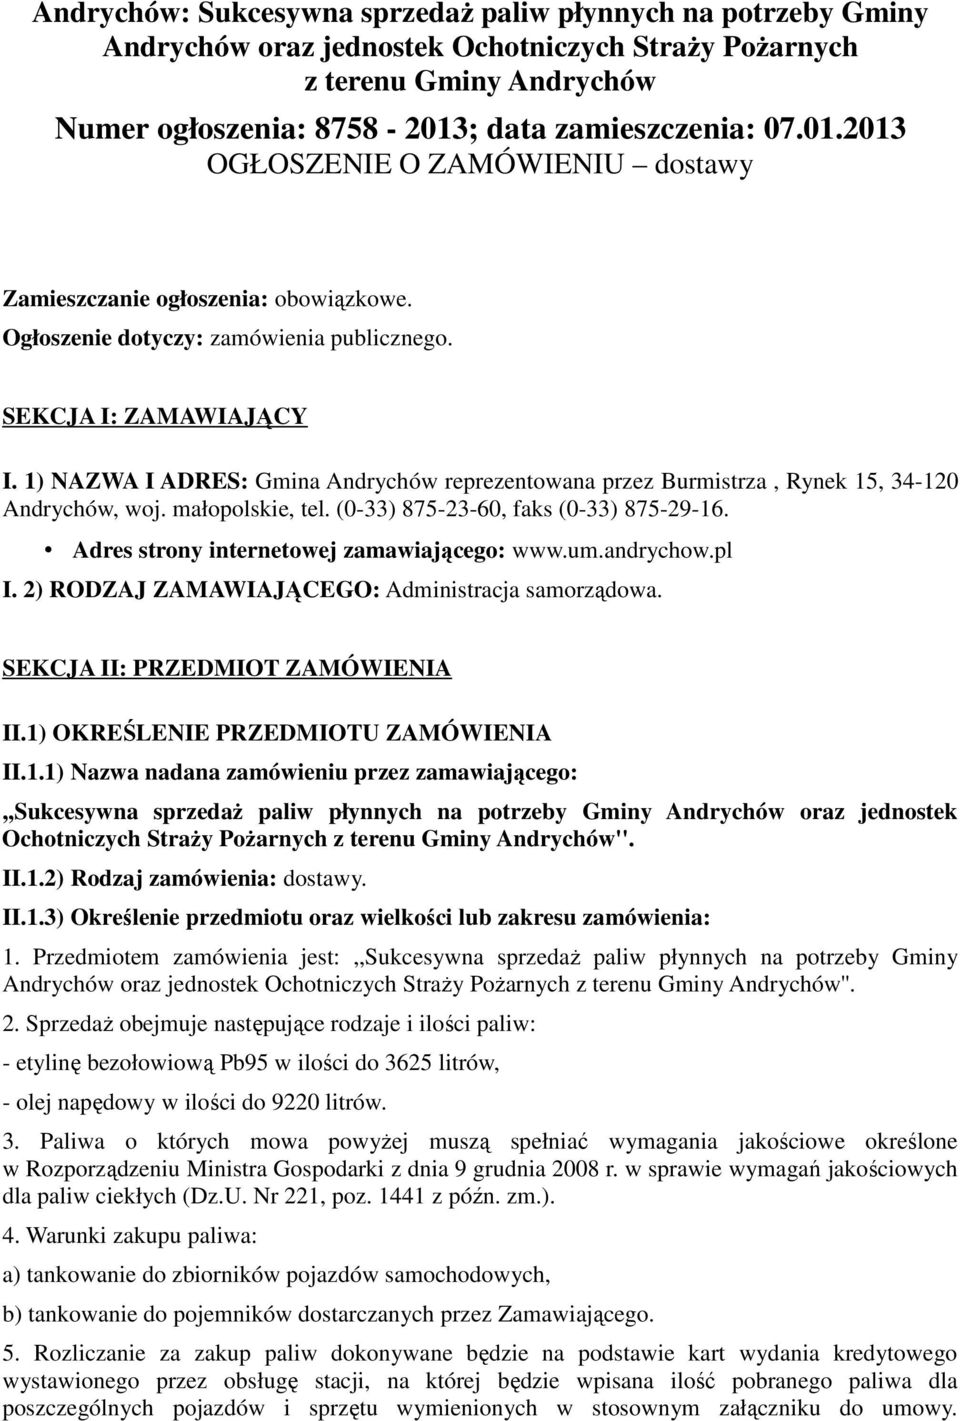 1) NAZWA I ADRES: Gmina Andrychów reprezentowana przez Burmistrza, Rynek 15, 34-120 Andrychów, woj. małopolskie, tel. (0-33) 875-23-60, faks (0-33) 875-29-16.